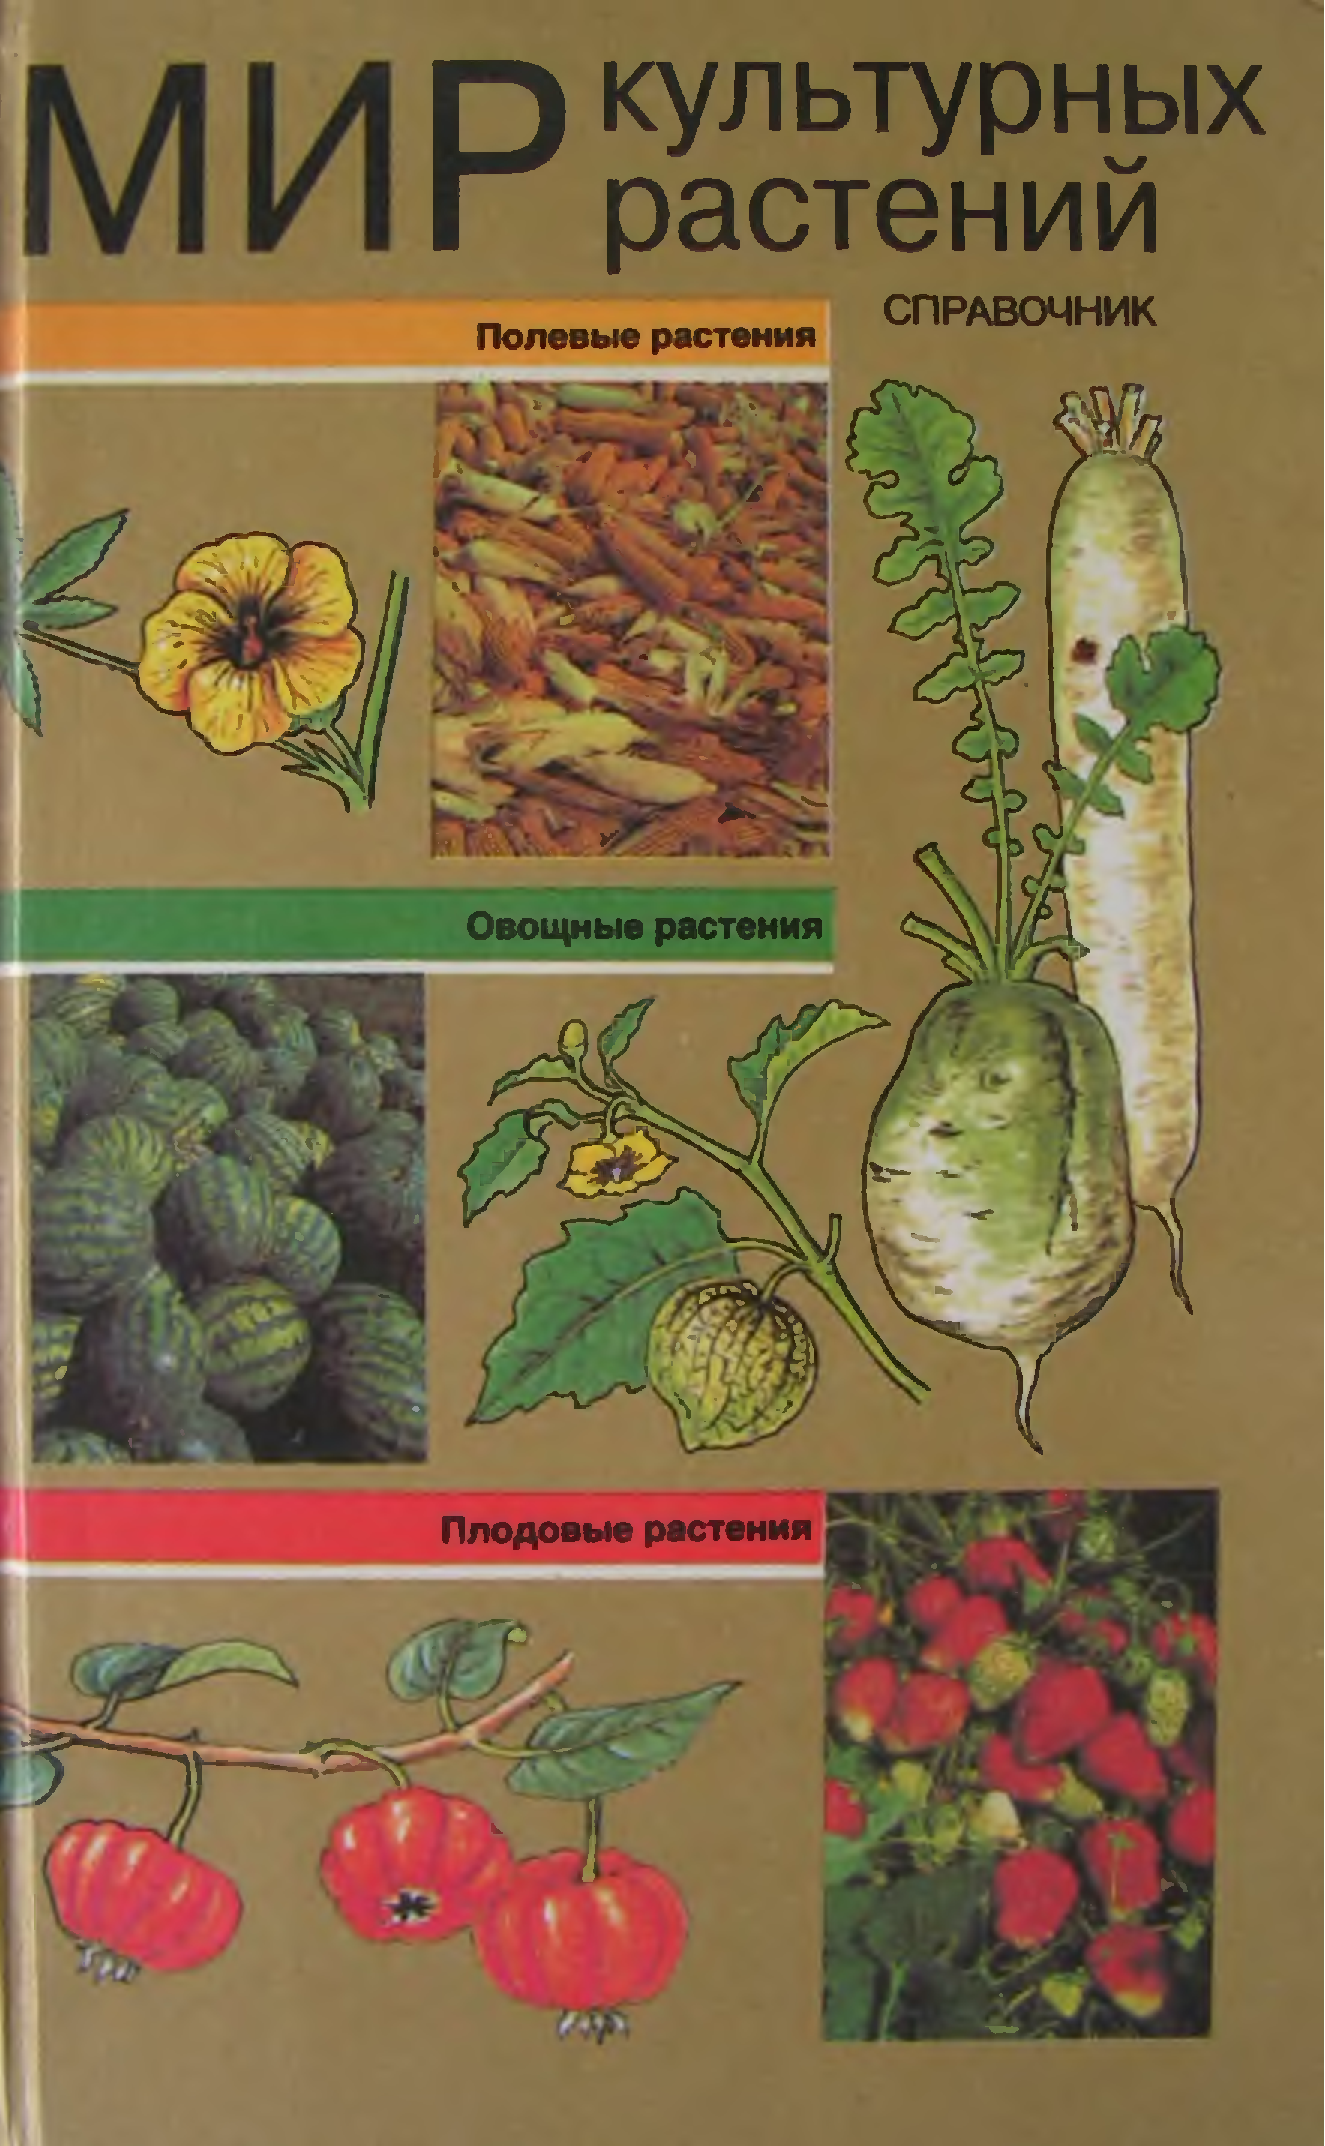 Книги о культурных растениях 3 класс